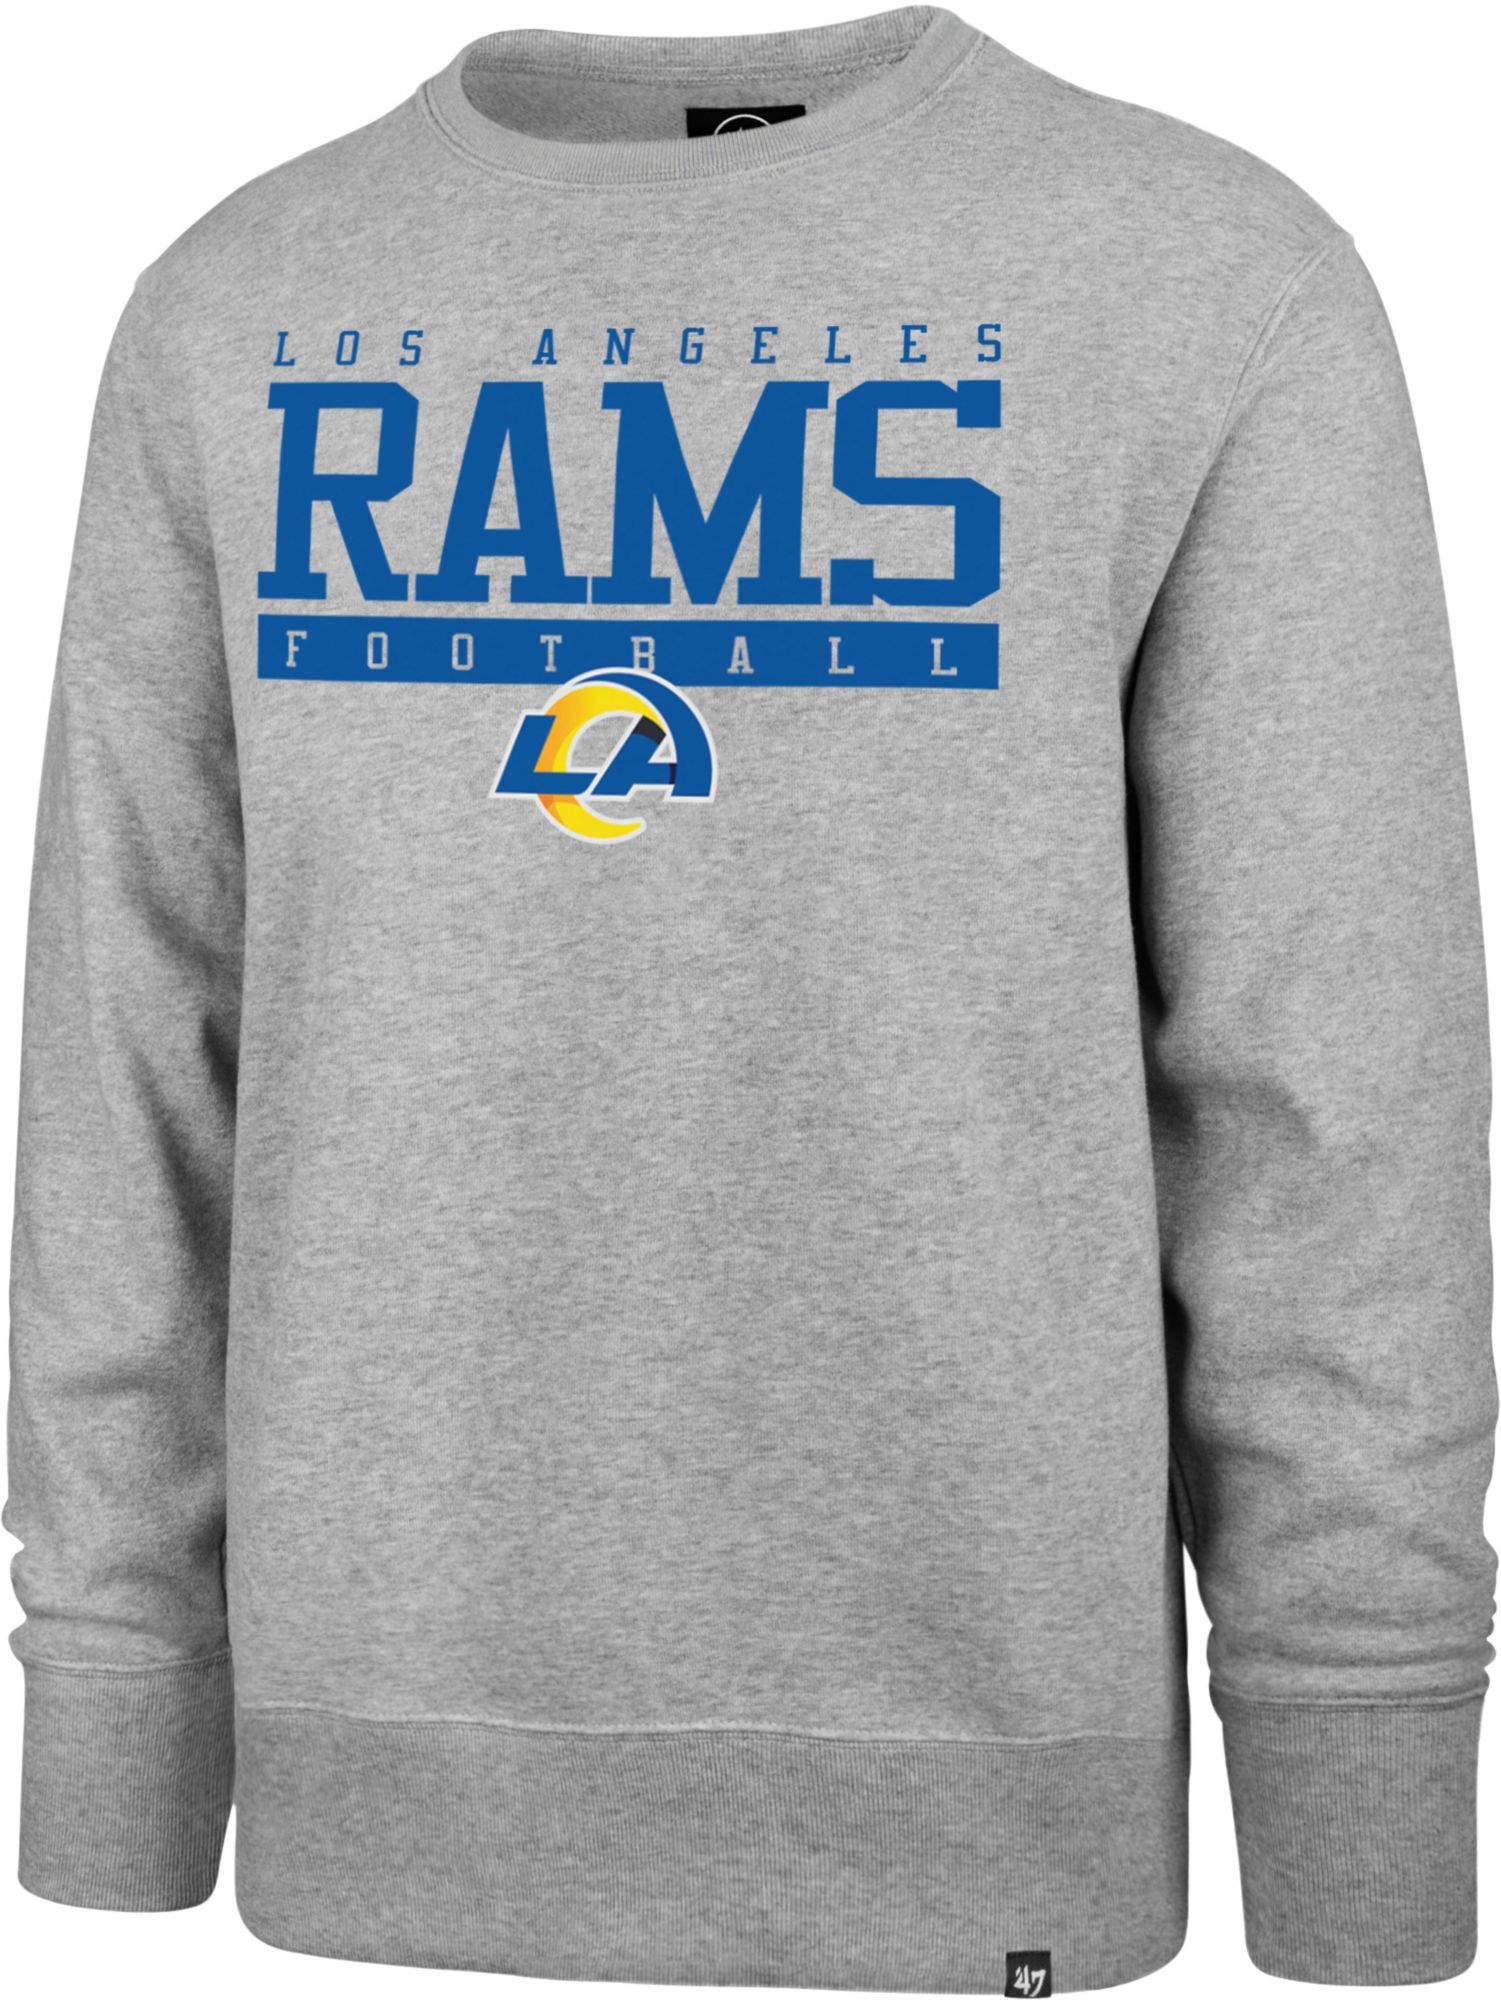 Men's Vintage Rams Graphic Crew Sweatshirt